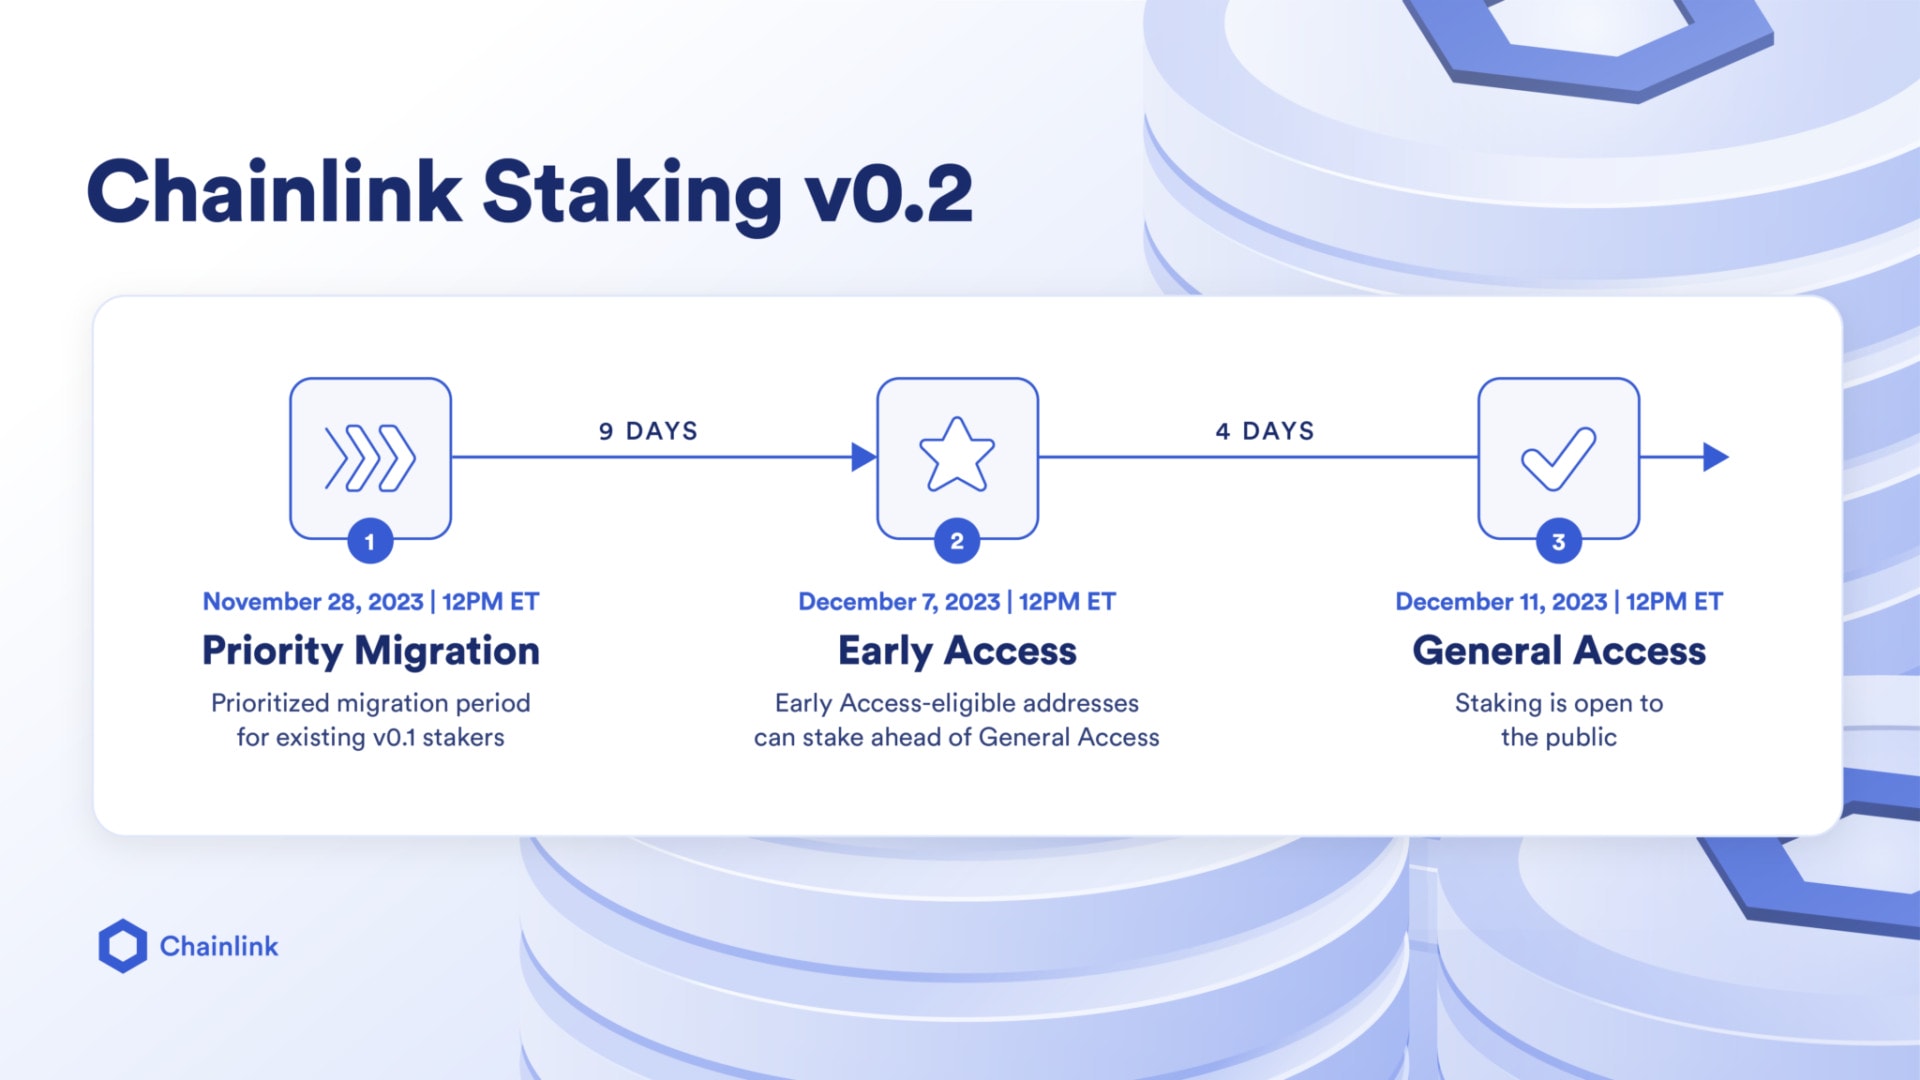 Les différentes étapes du déploiement de Chainlink Staking v0.2